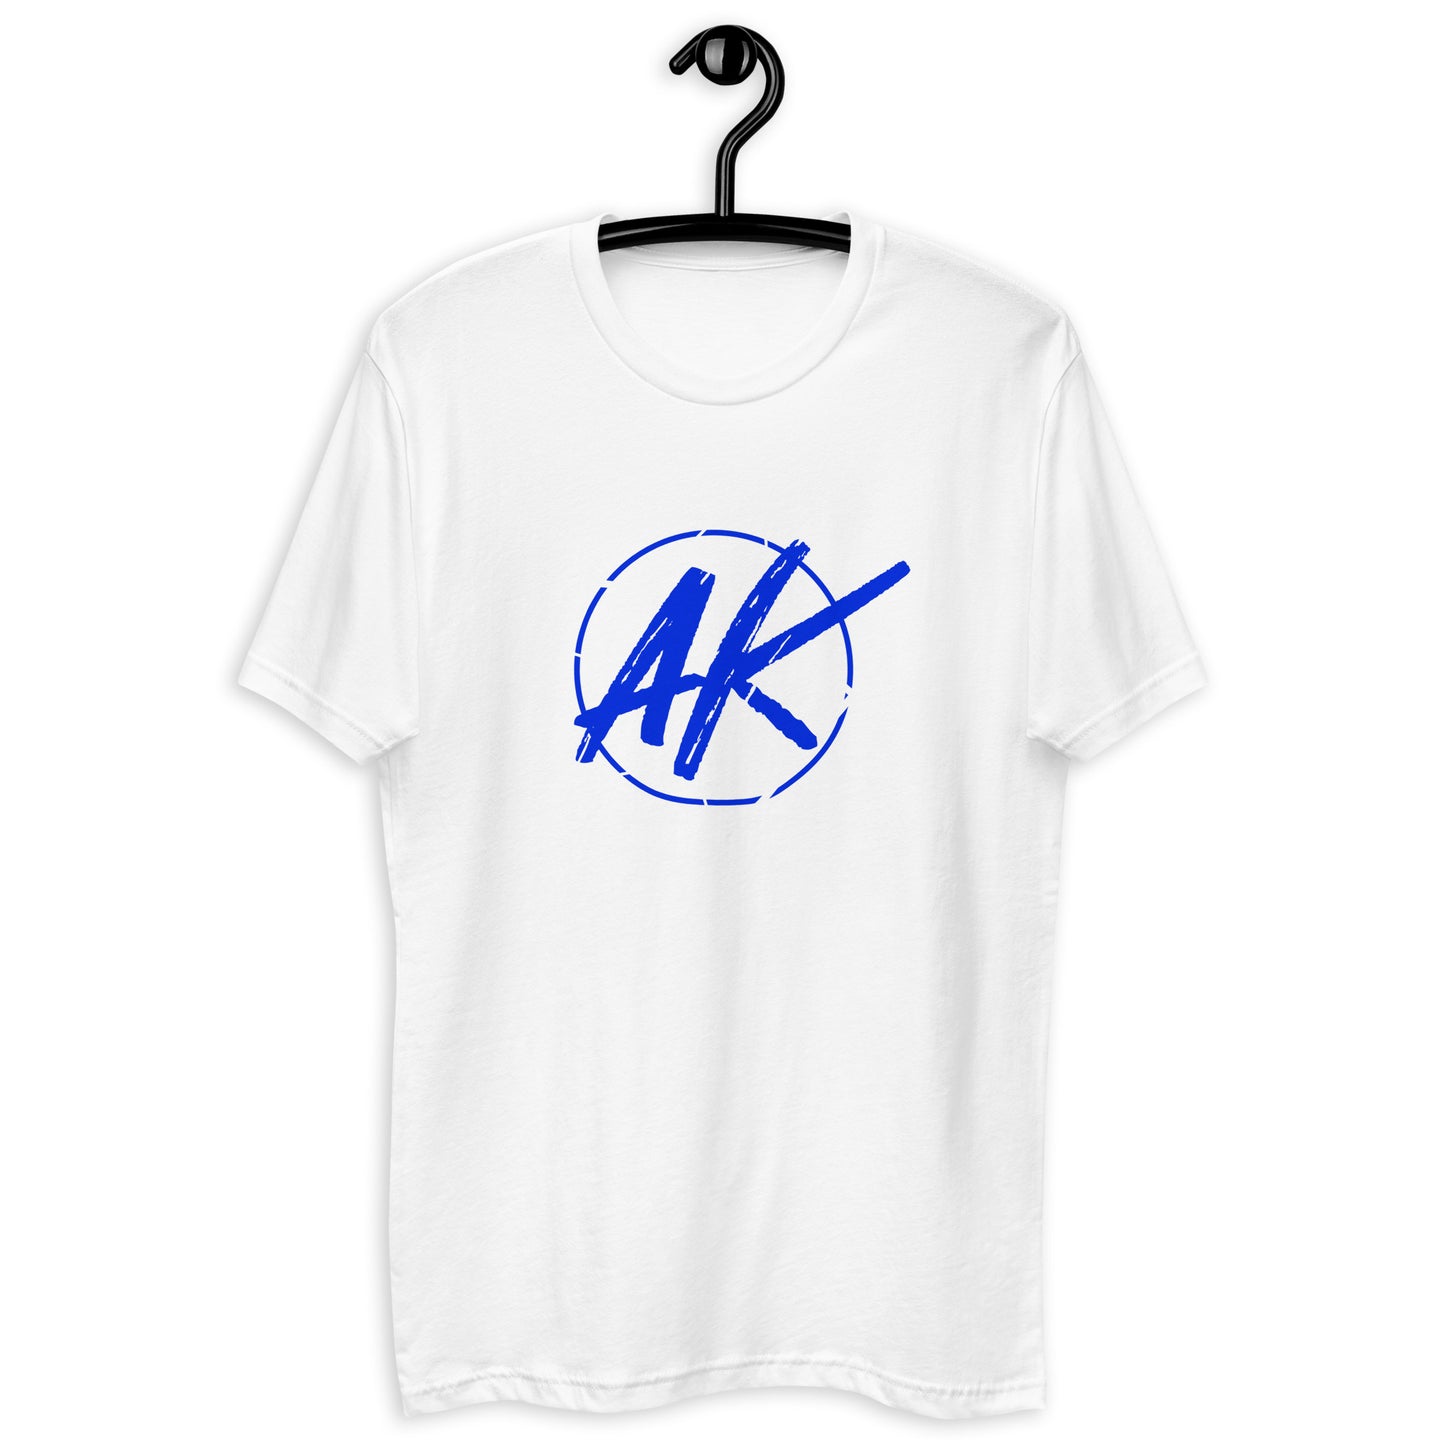 M| AK (blue)